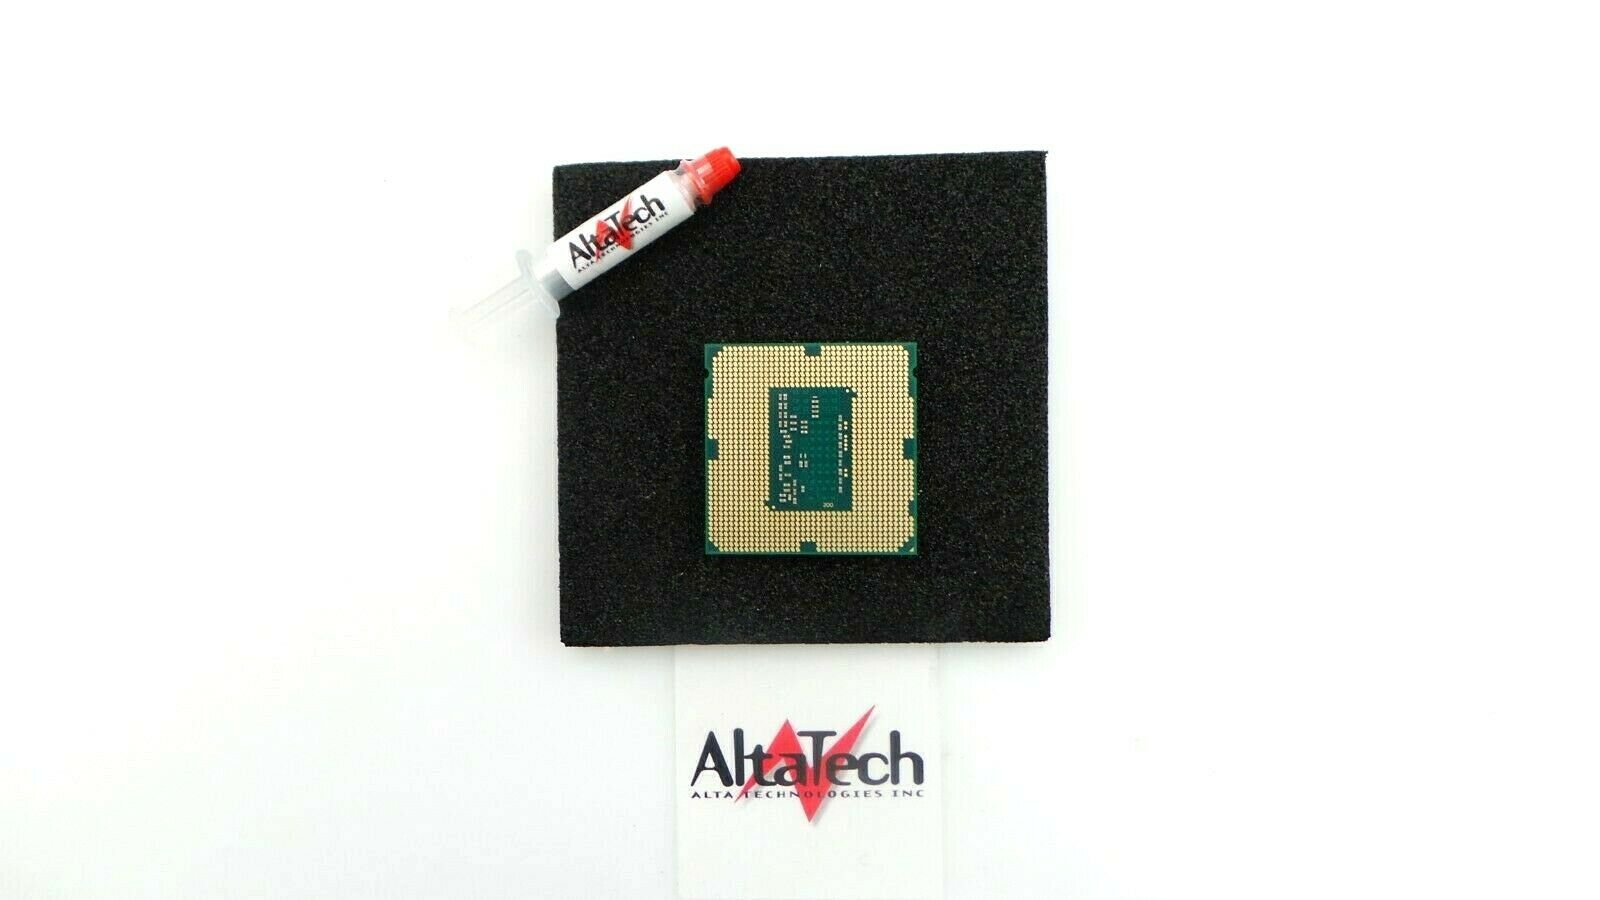 Intel SR14T Xeon E3-1245v3 Quad Core 3.4GHz LGA1150 Processor w/ Thermal Grease, Used